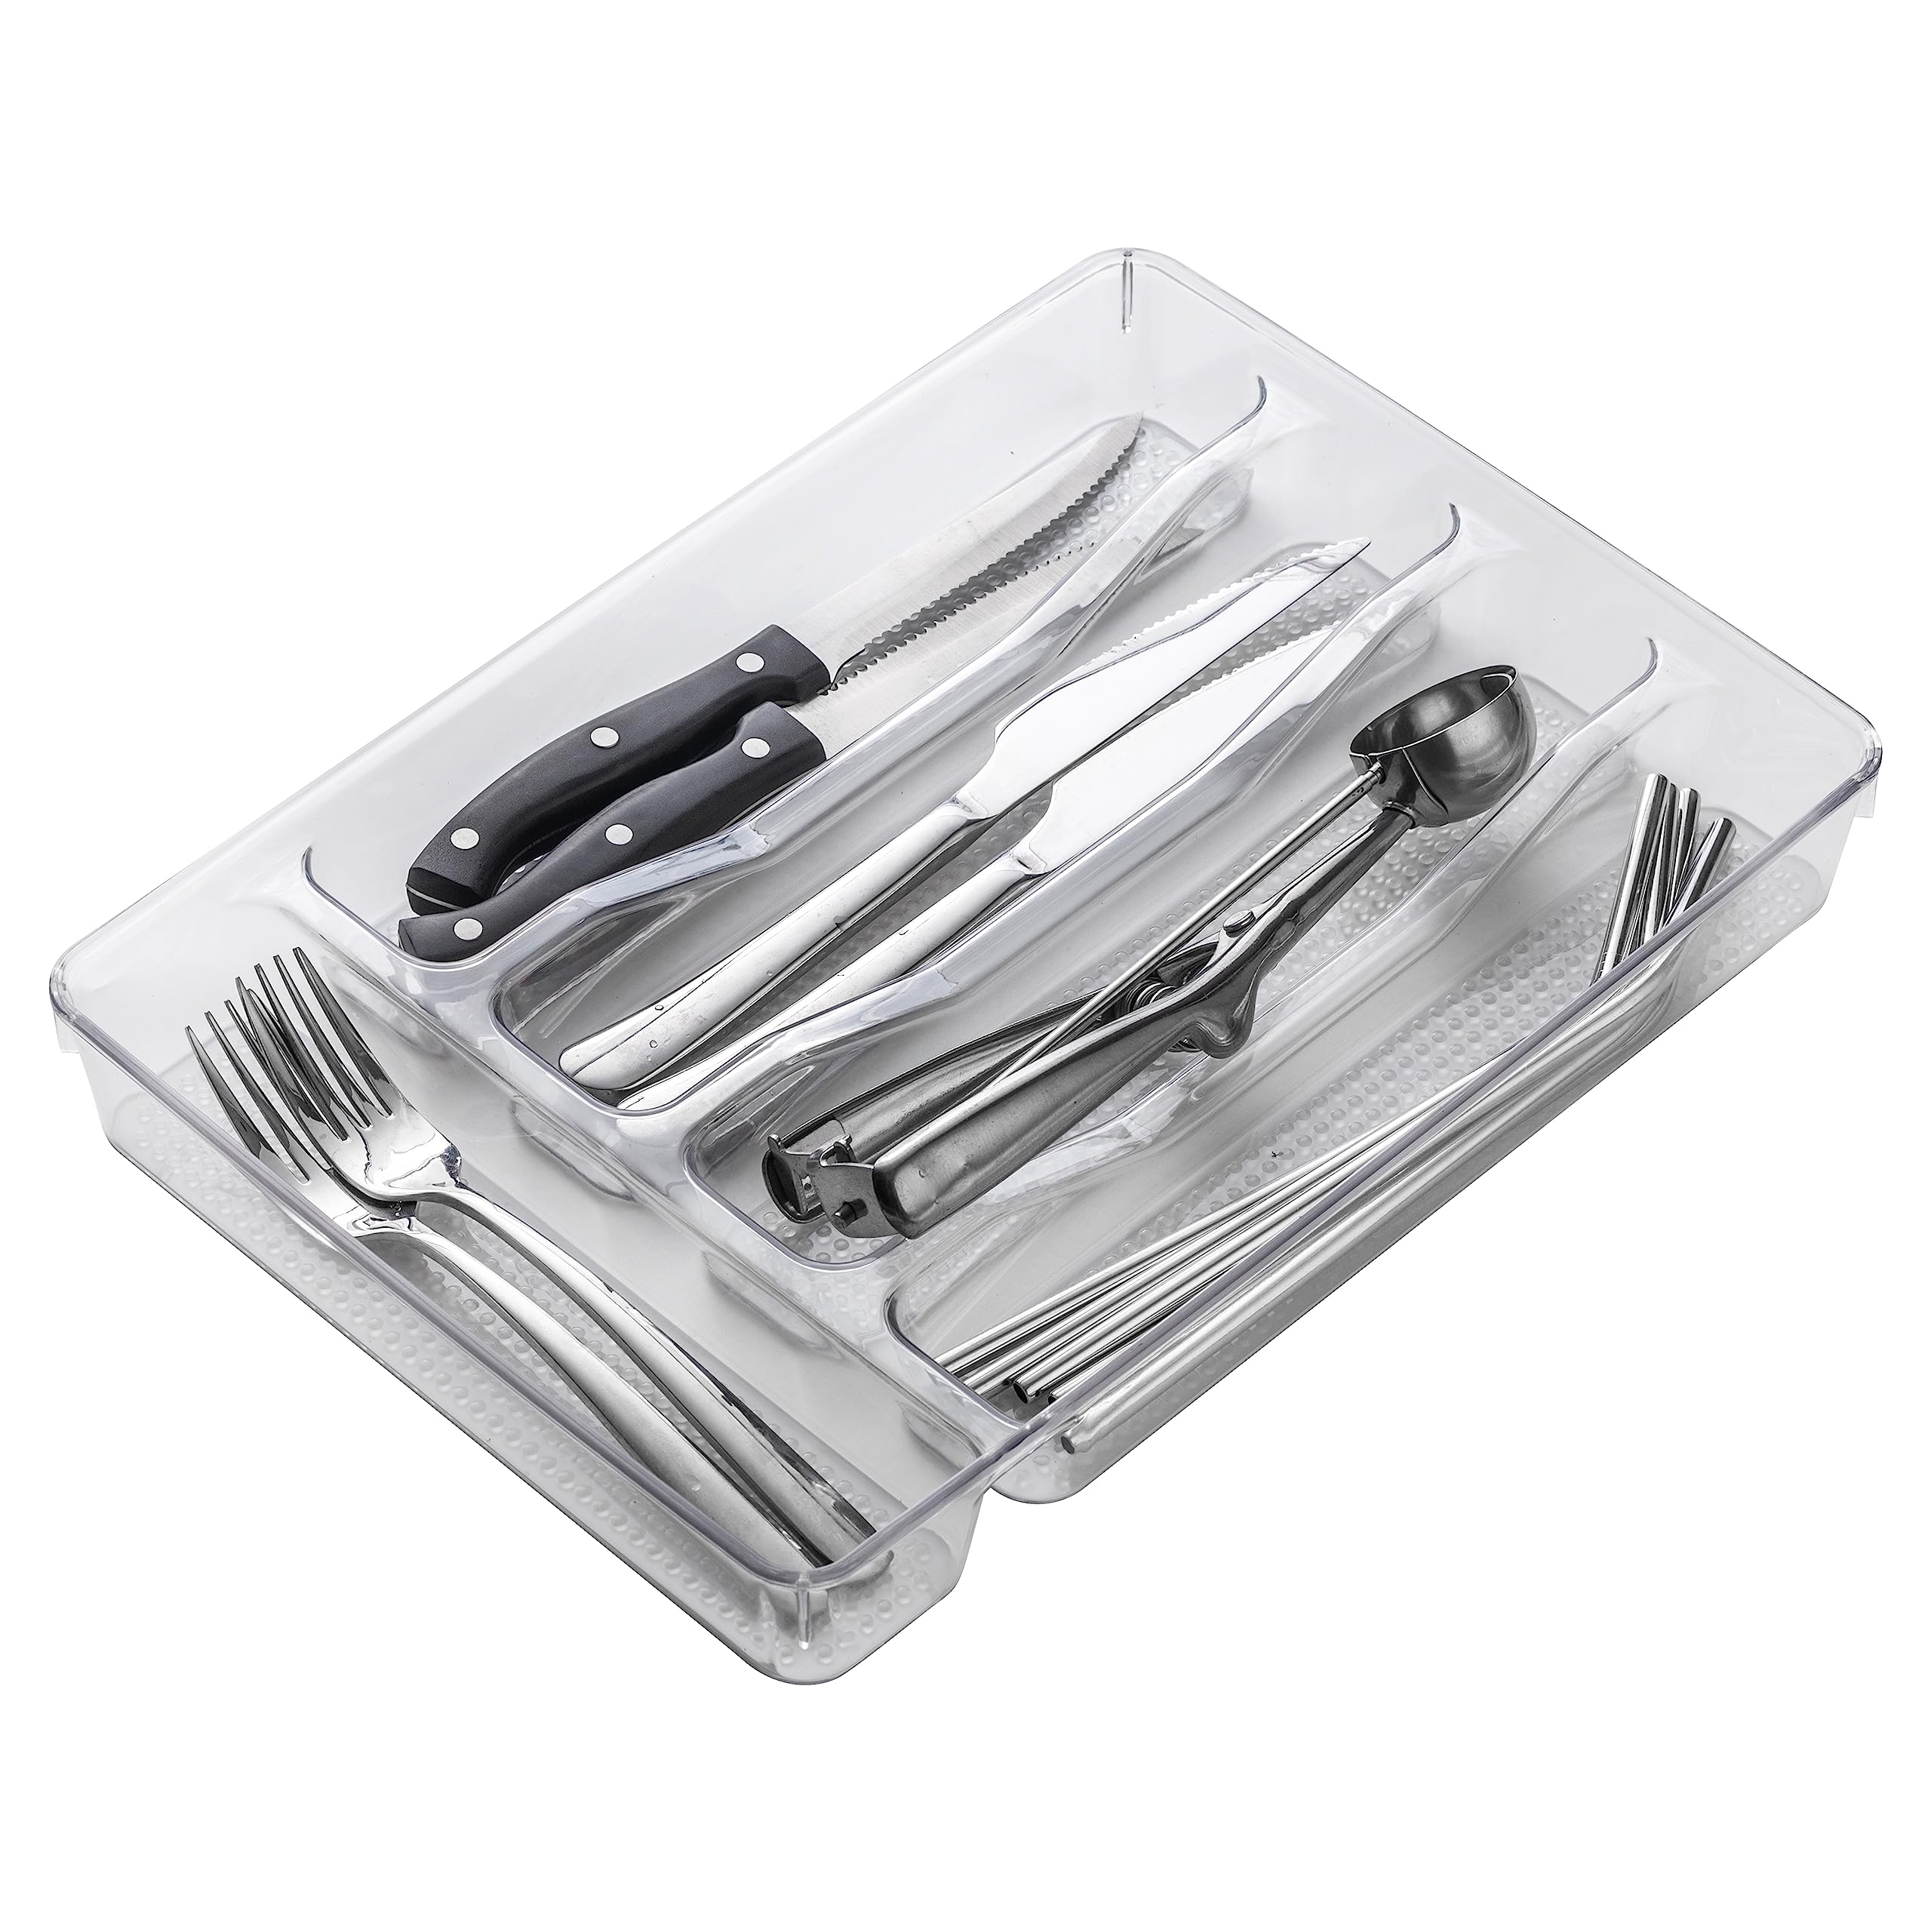 SIMPLEMADE Kitchen Drawer Silverware Organizer Tray - 6-Slot Flatware Holder and Utensil Holder - Desk Drawer Organizer - Storage for Kitchen, Office, Bathroom  - Like New